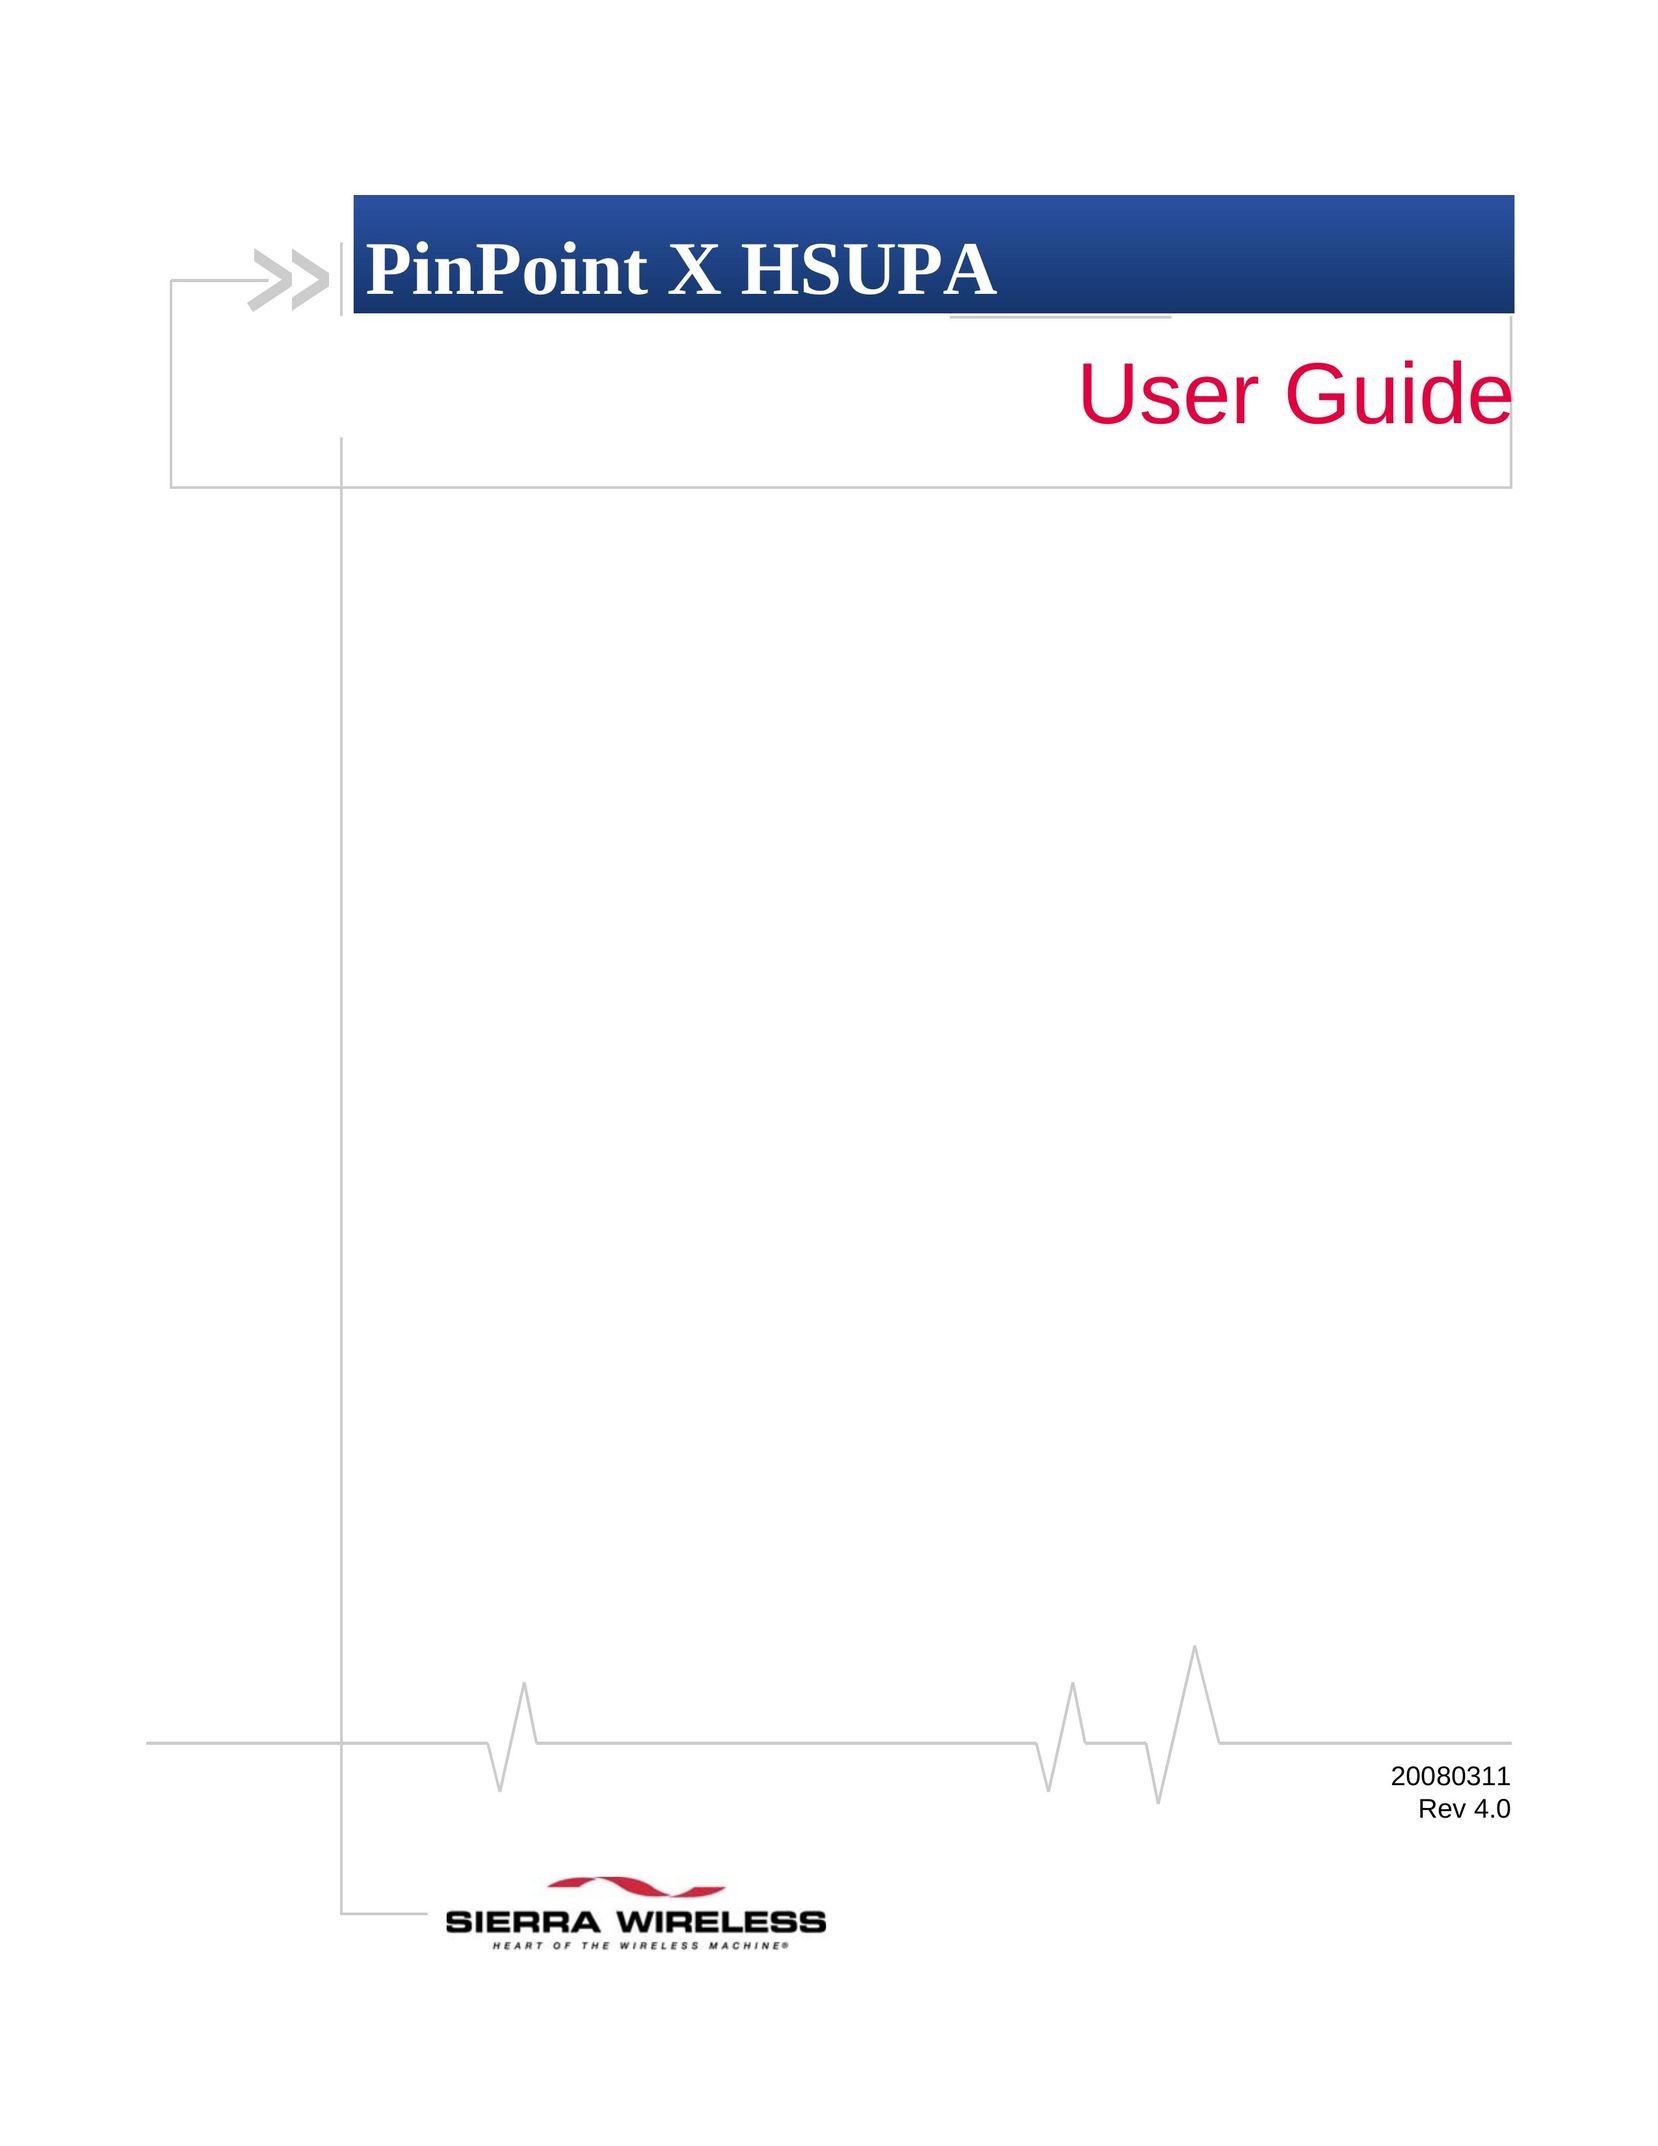 Sierra Wireless X HSUPA Network Hardware User Manual